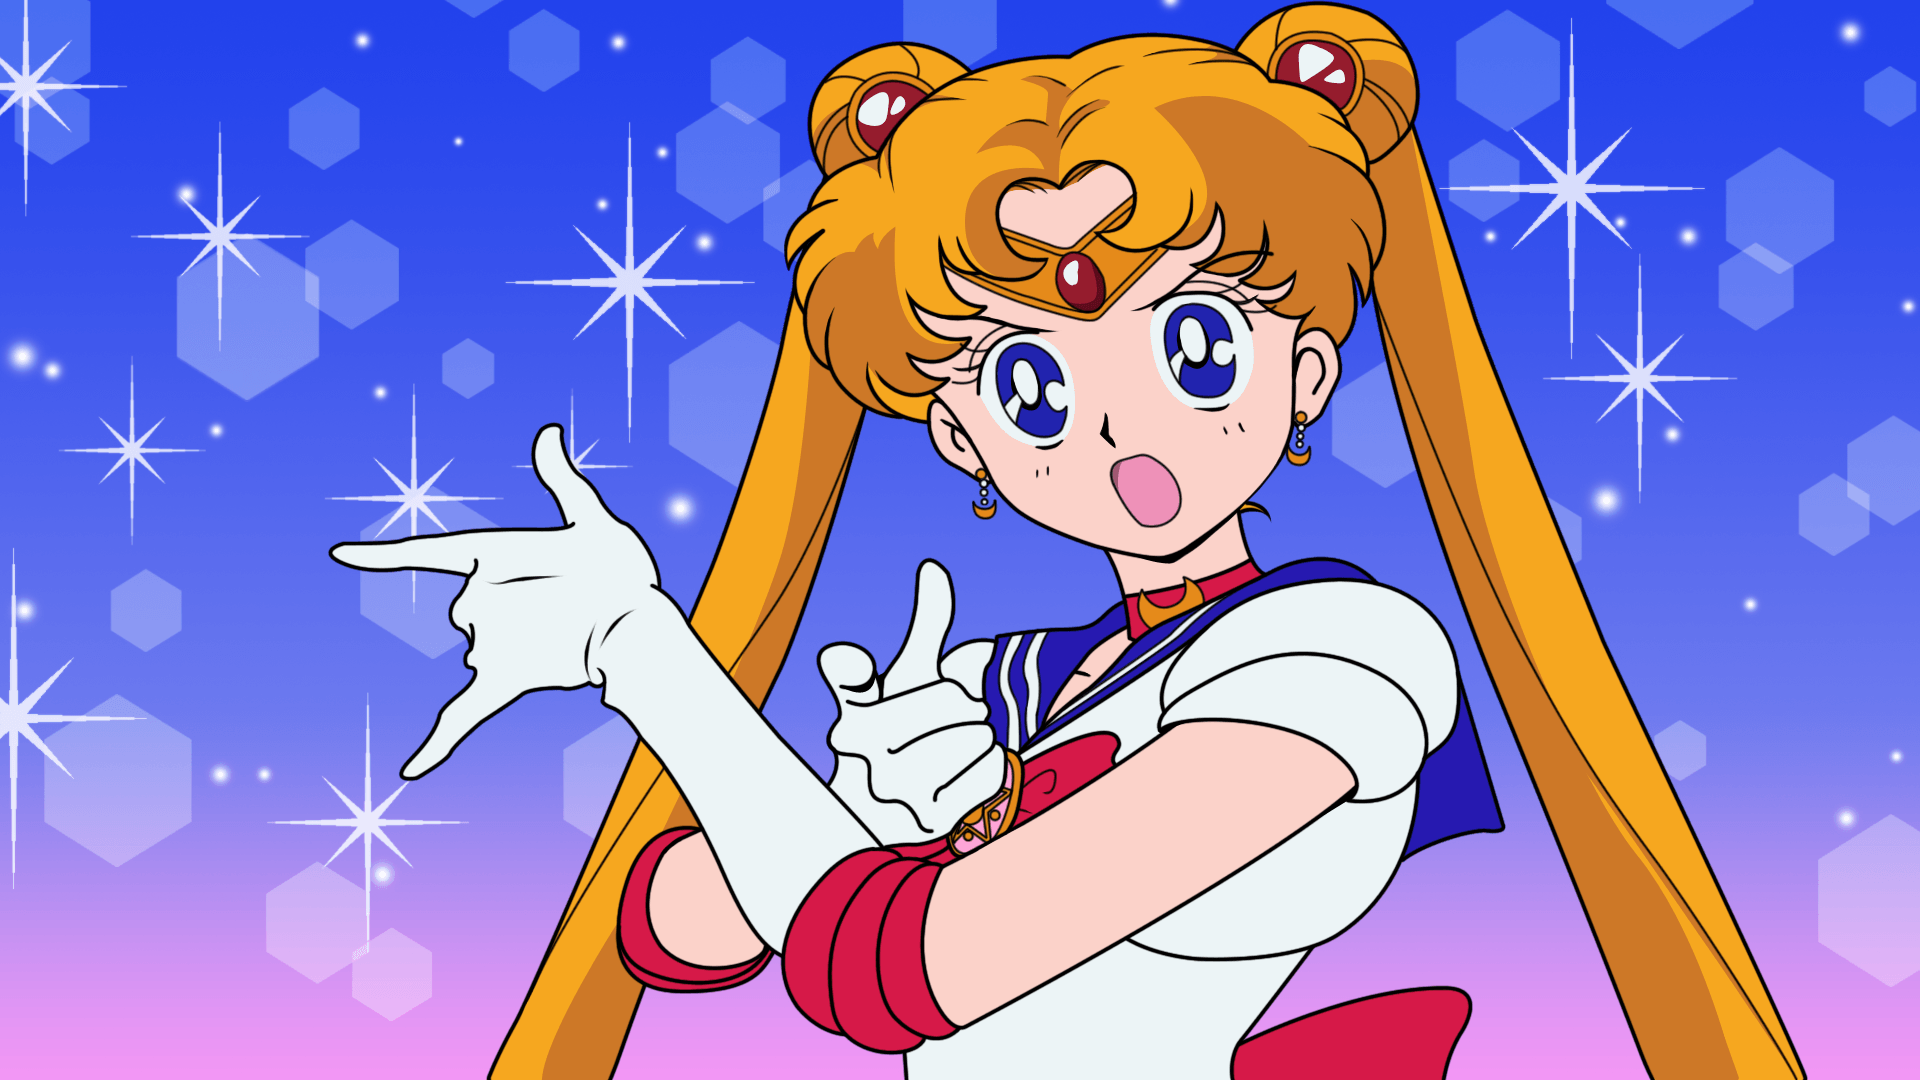 Ya está disponible Sailor Moon en Netflix. Corred a verla u os castigaré